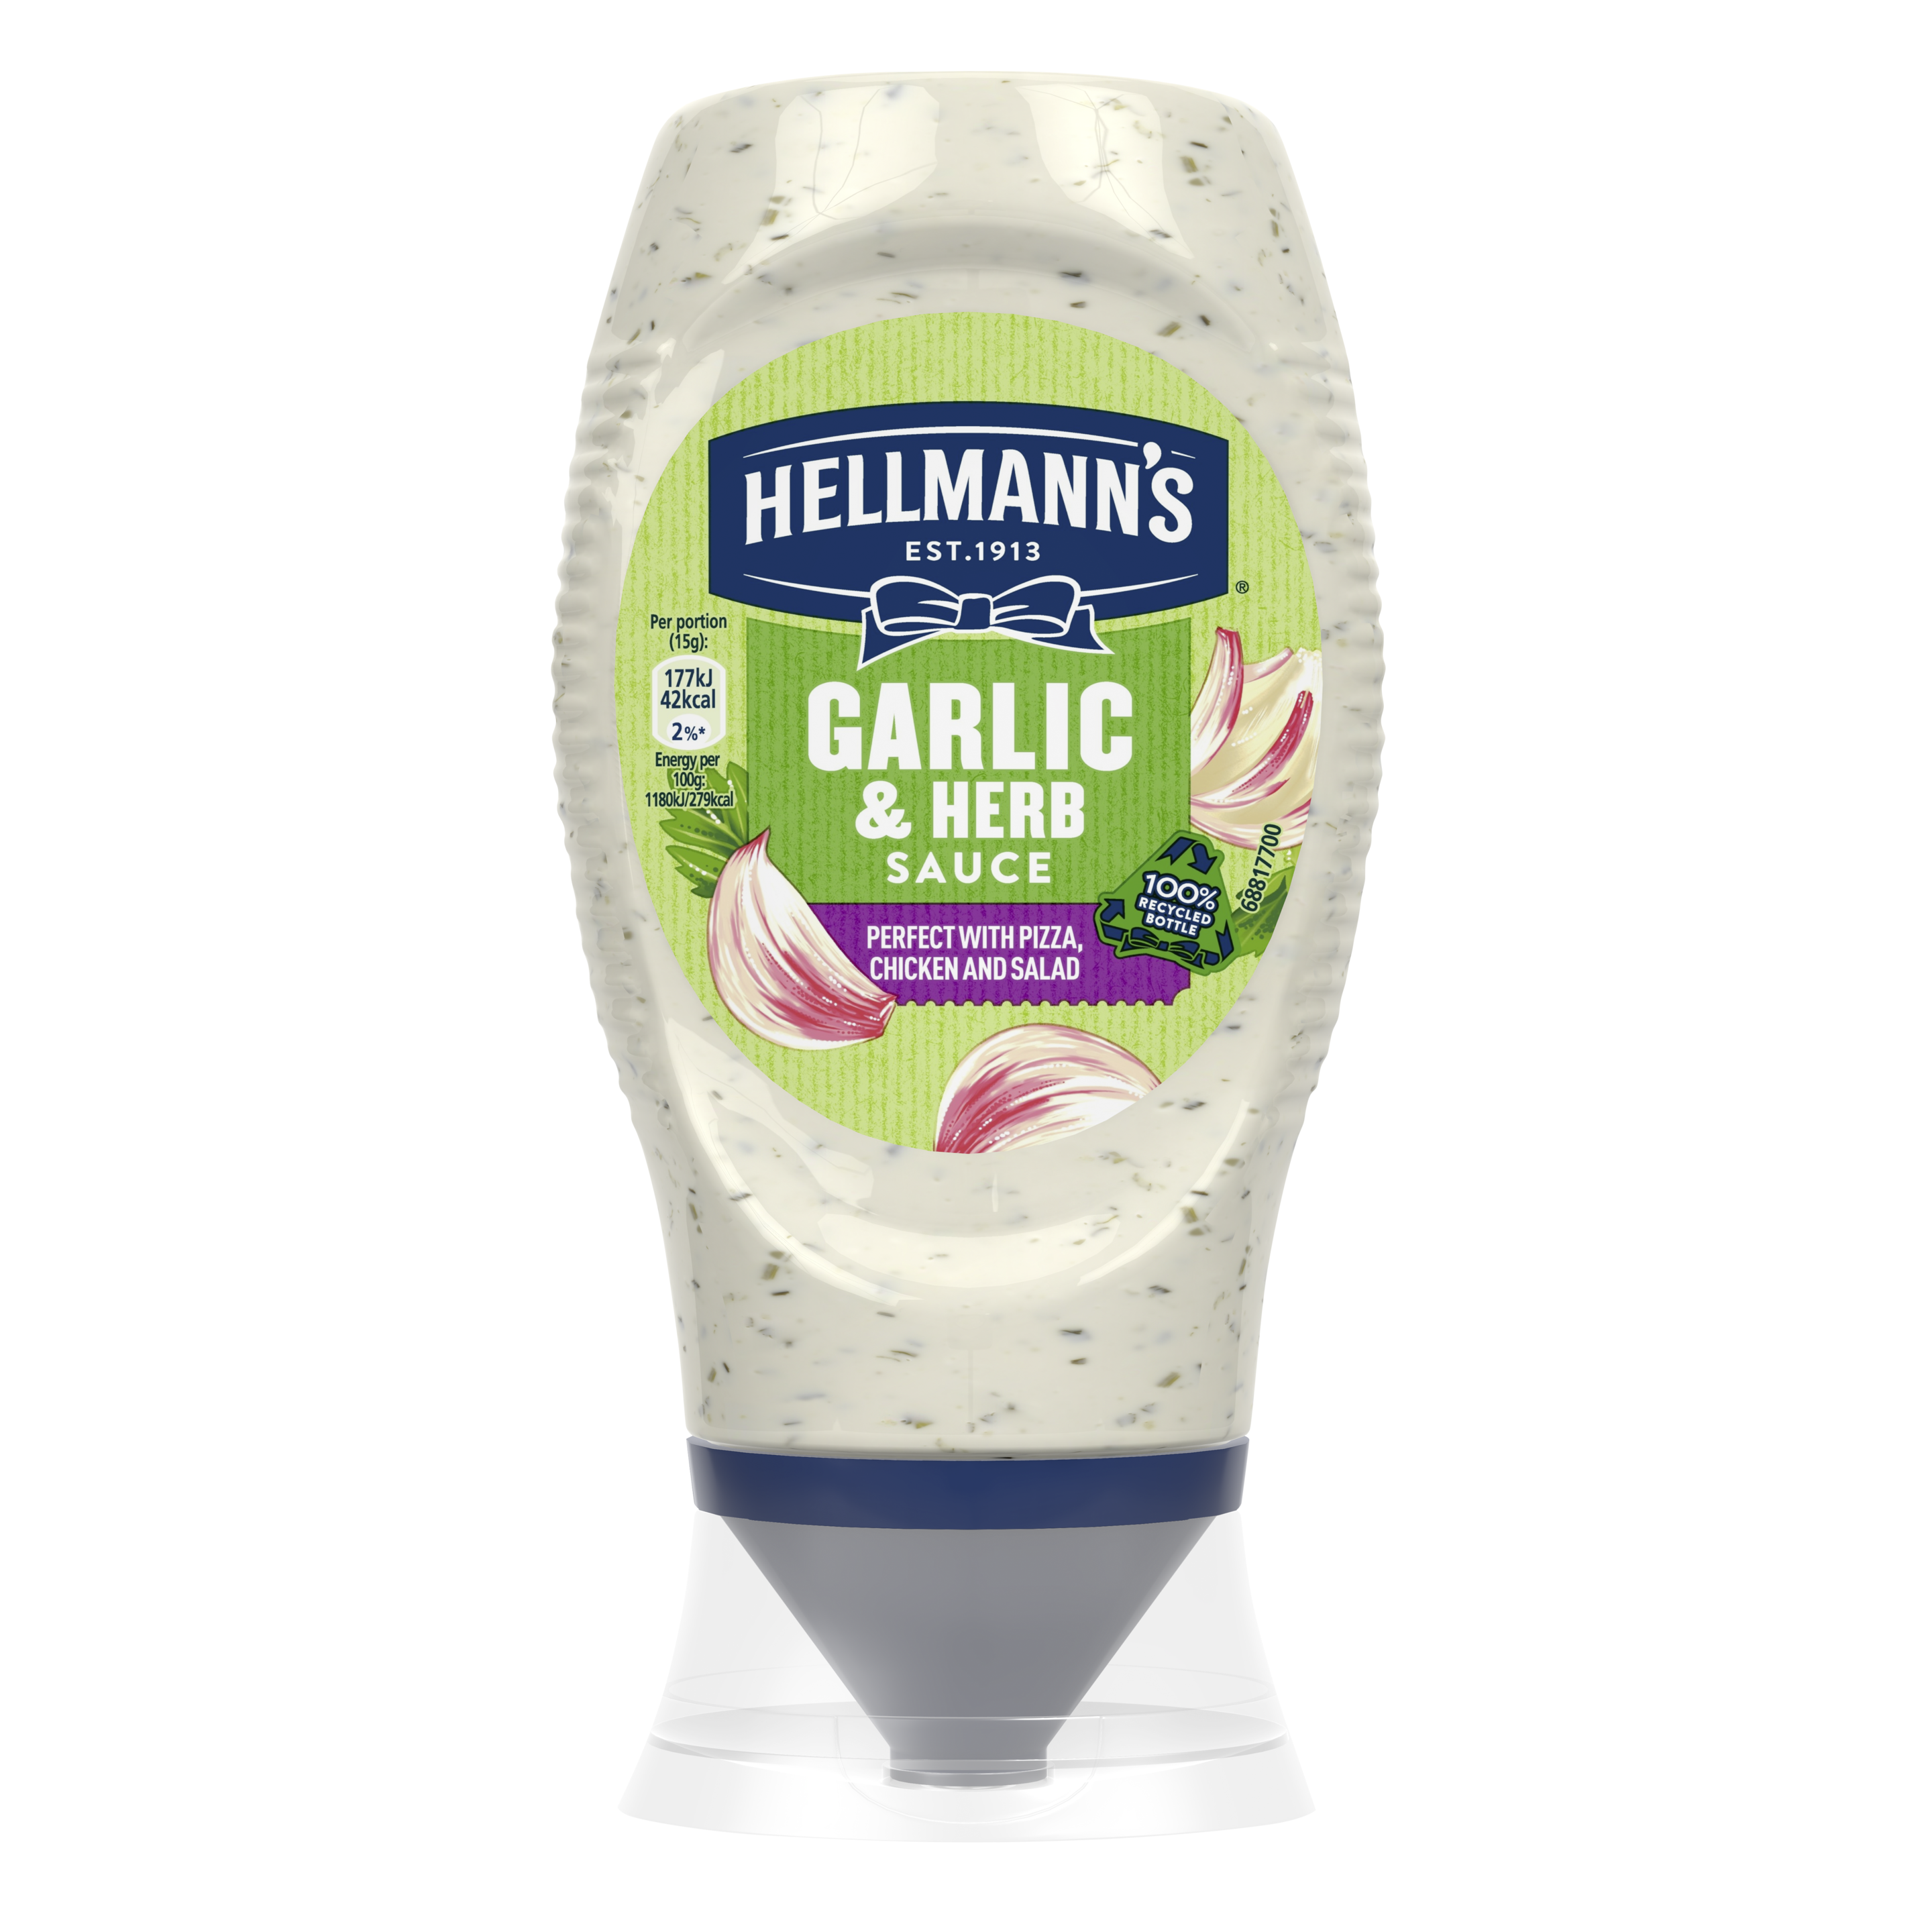 Hellmann's Garlic and Herb Sauce